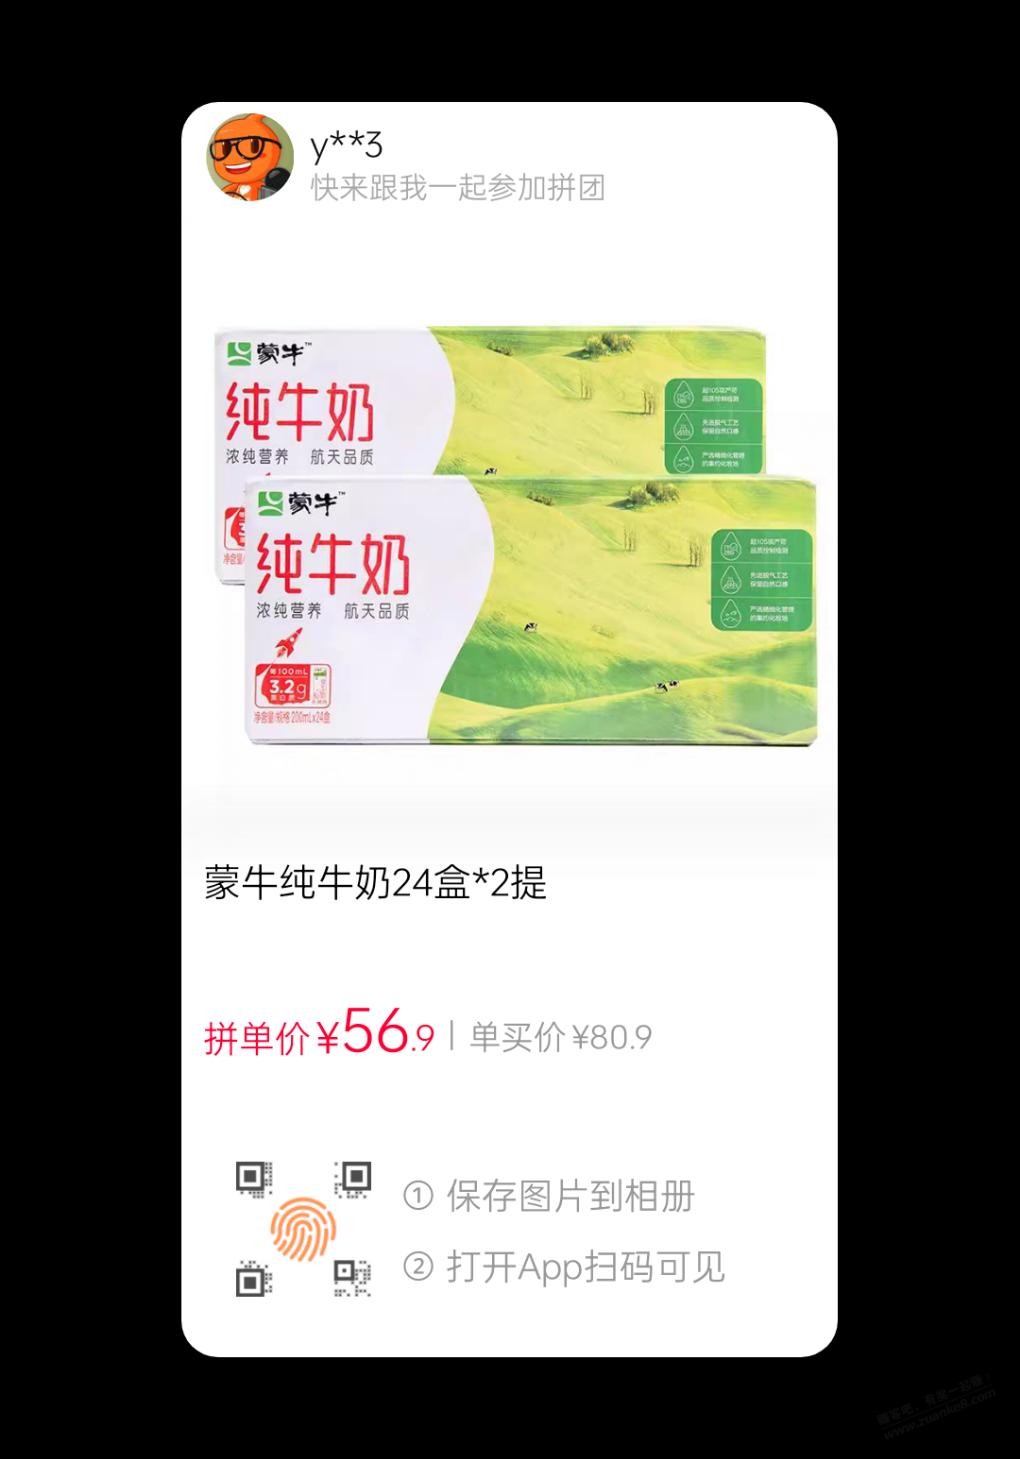 56.9两箱拼团蒙牛纯牛奶-惠小助(52huixz.com)